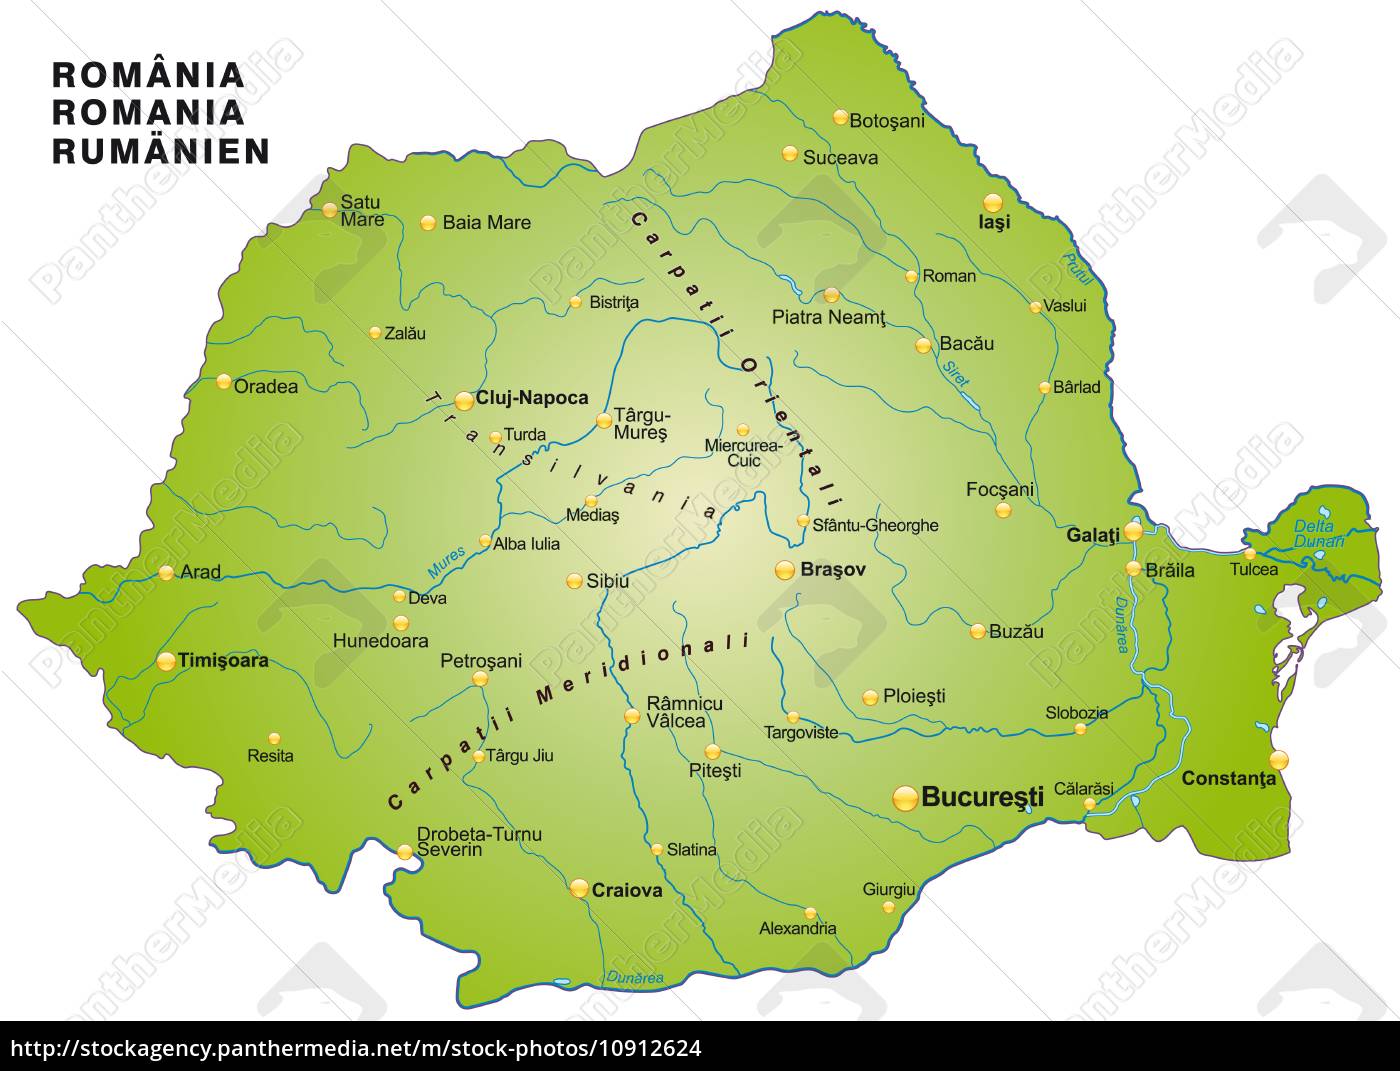 Kort Over RumæNien kort over rumænien som et oversigtskort i grøn   Stockphoto  Kort Over RumæNien